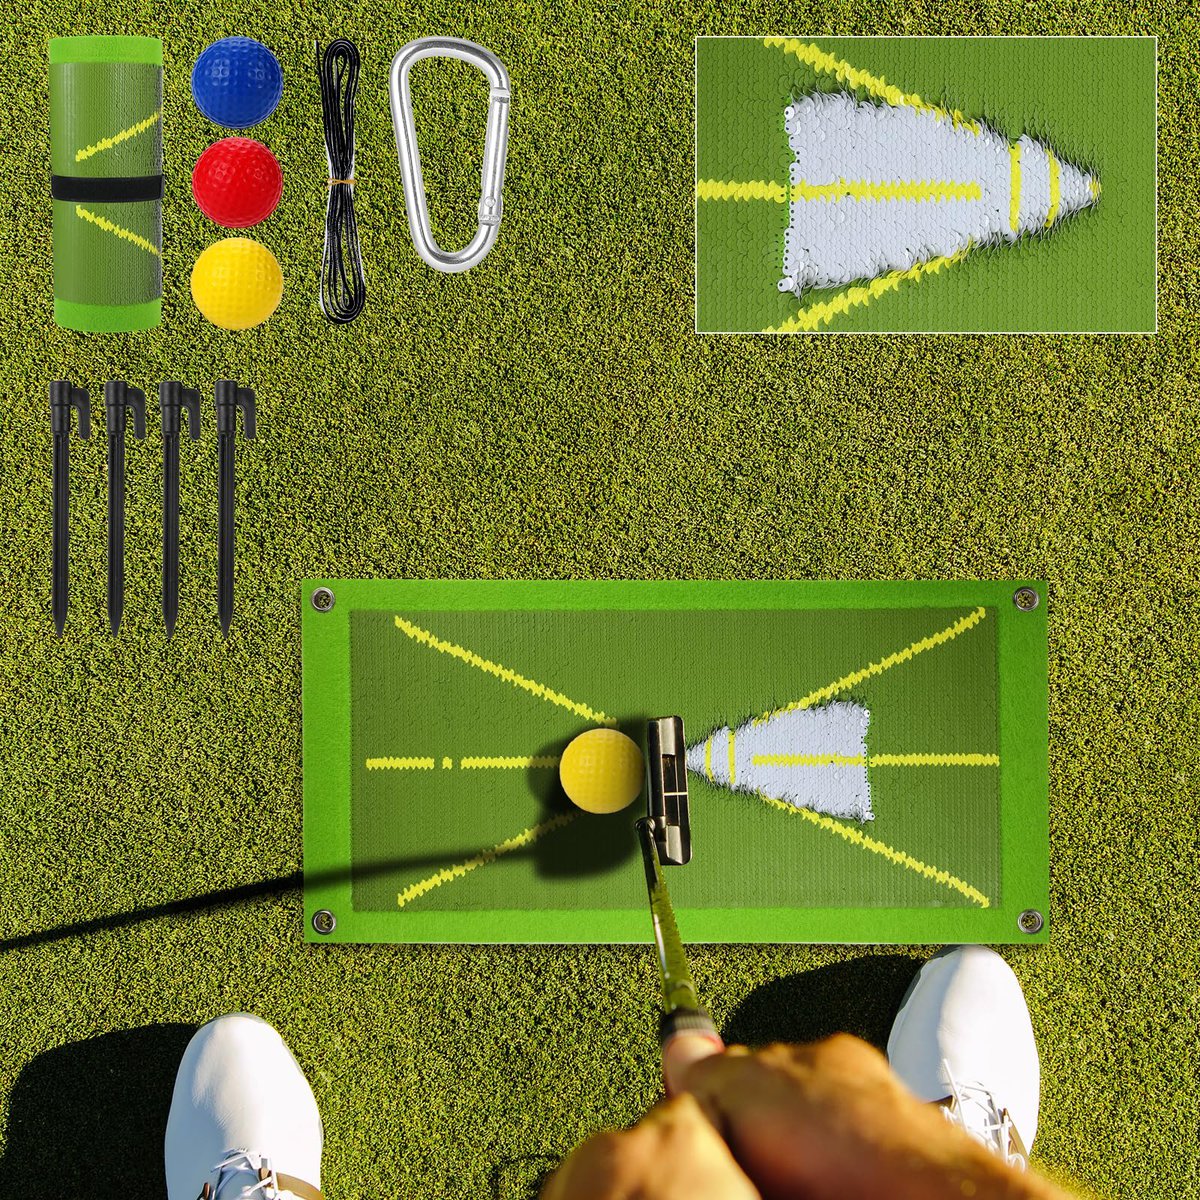 ZESKUU Golf Hitting Mat 5 Best Golf Hitting Mats